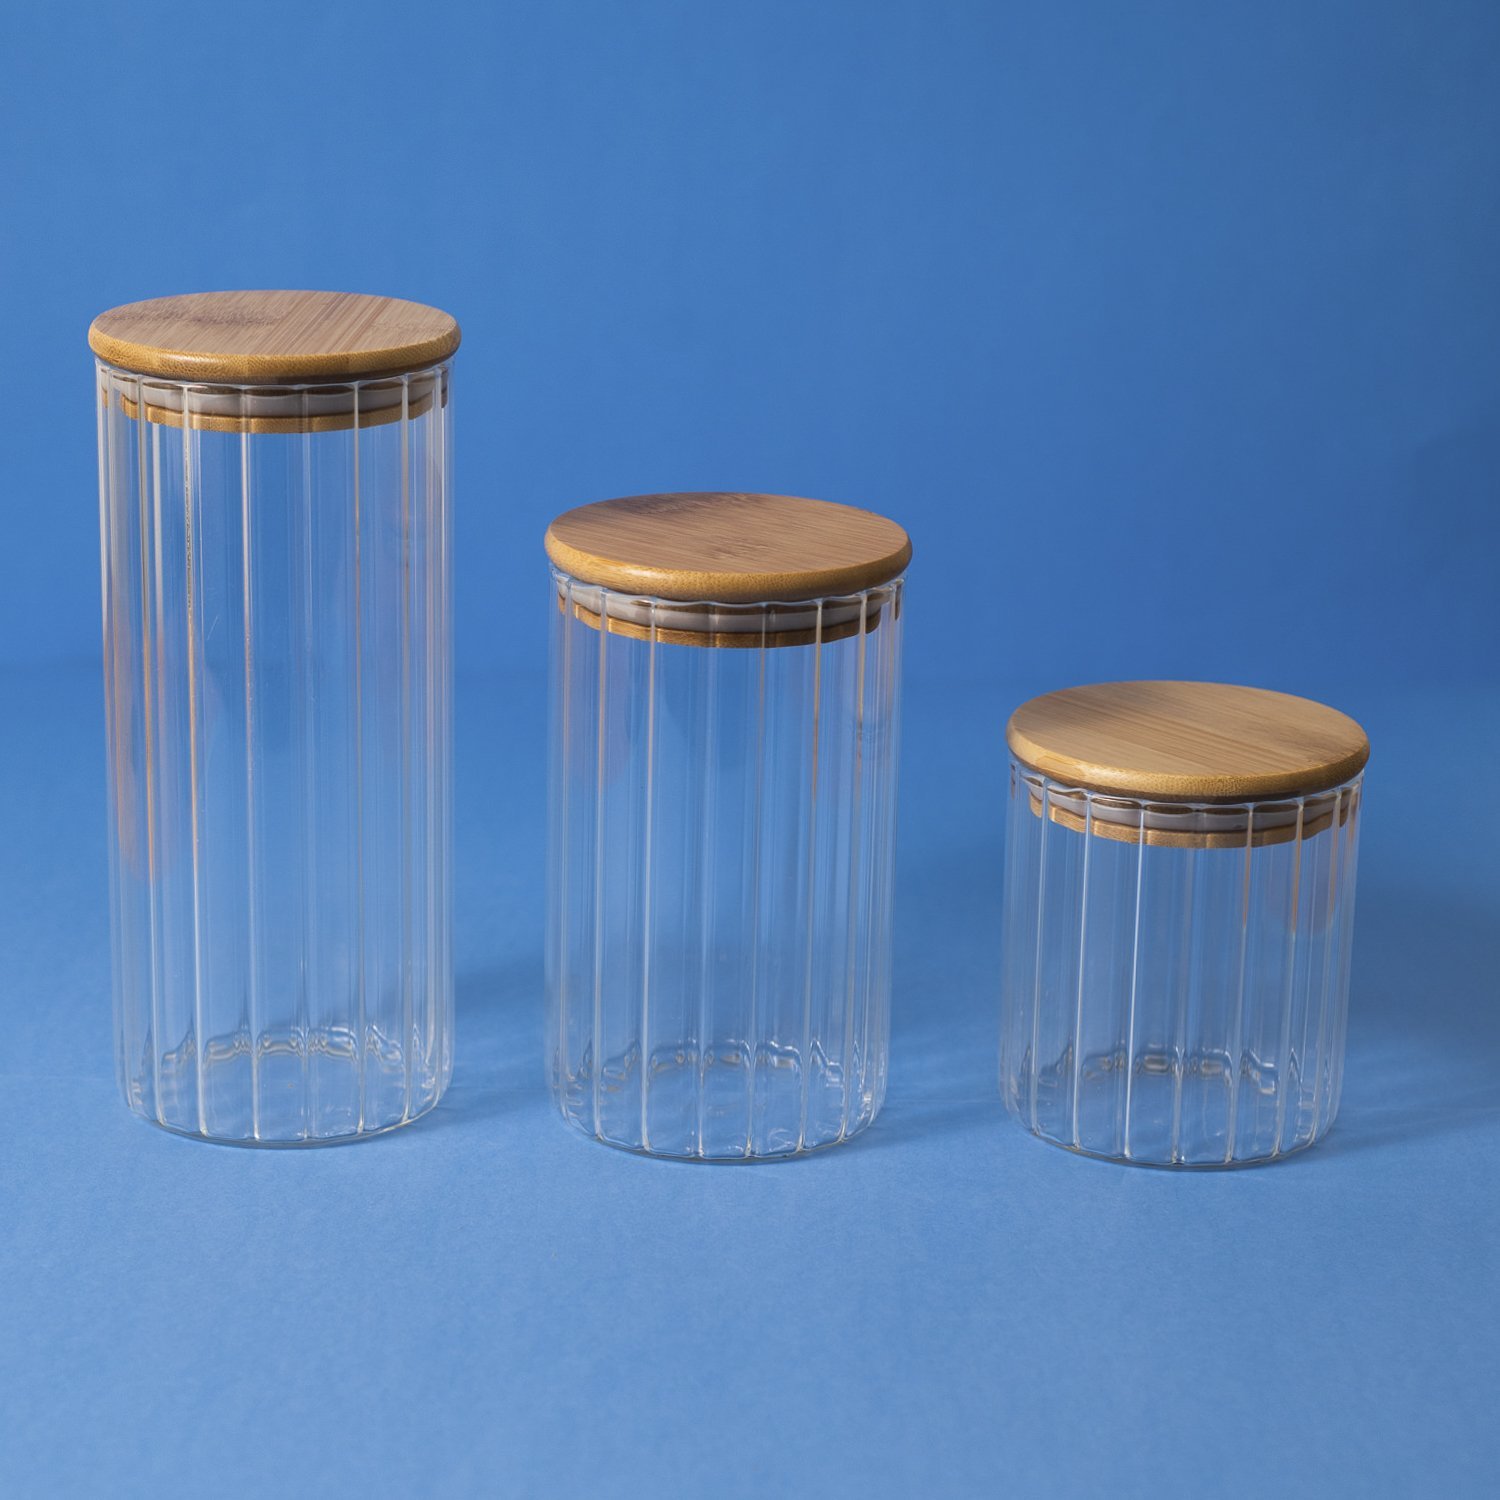 Pote 1100ml de vidro canelado com tampa de bambu de mantimento - Oikos - 5